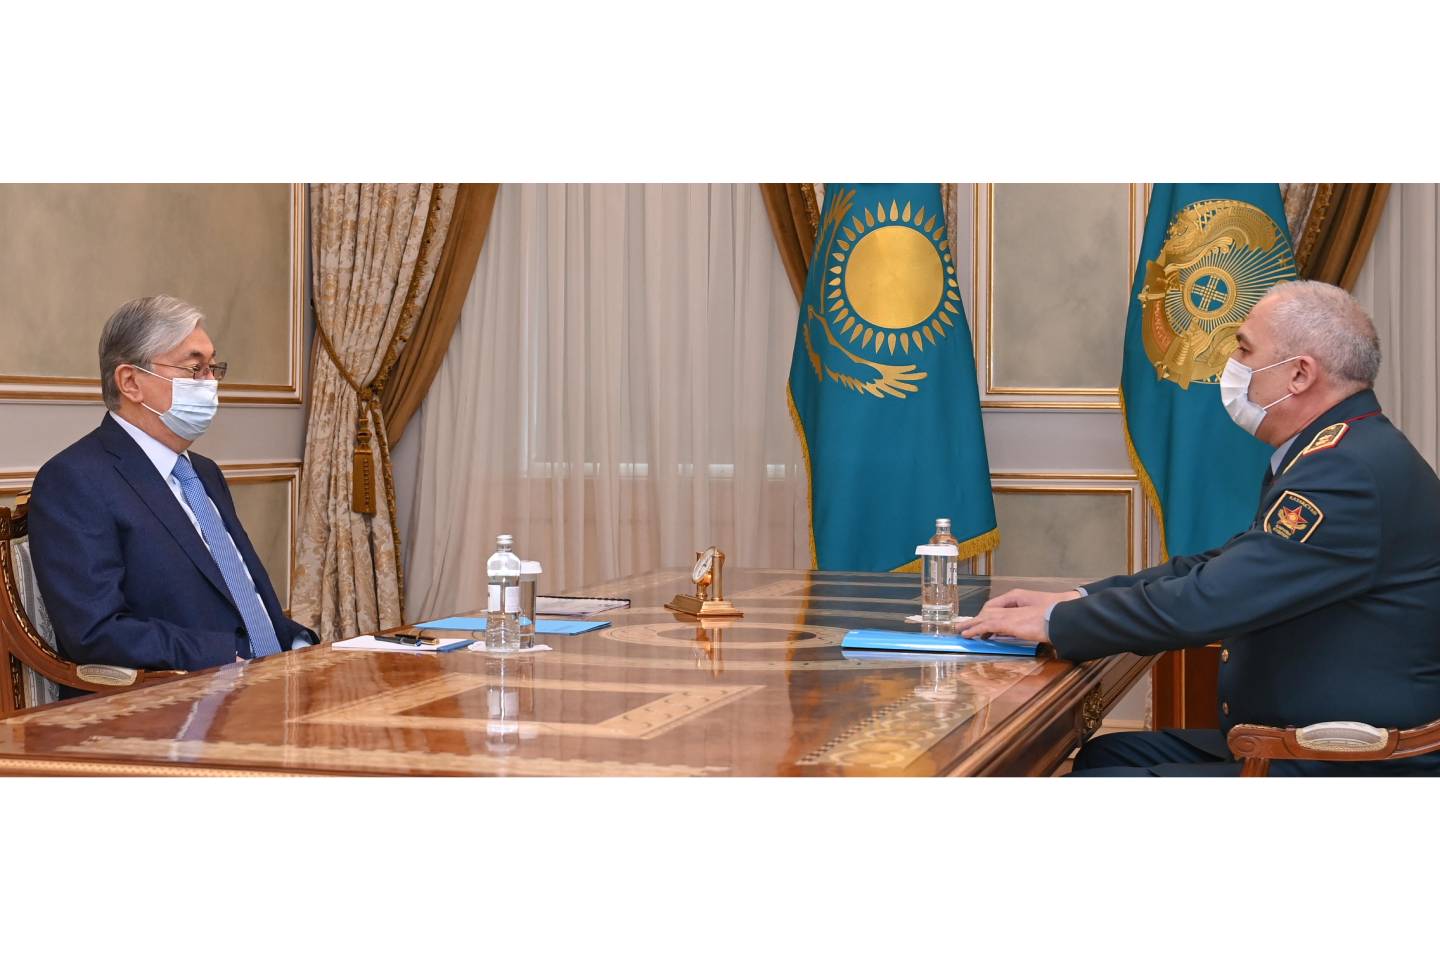 Новости Казахстана / Общество в Казахстане / Глава государства встретился с министром обороны Русланом Жаксылыковым